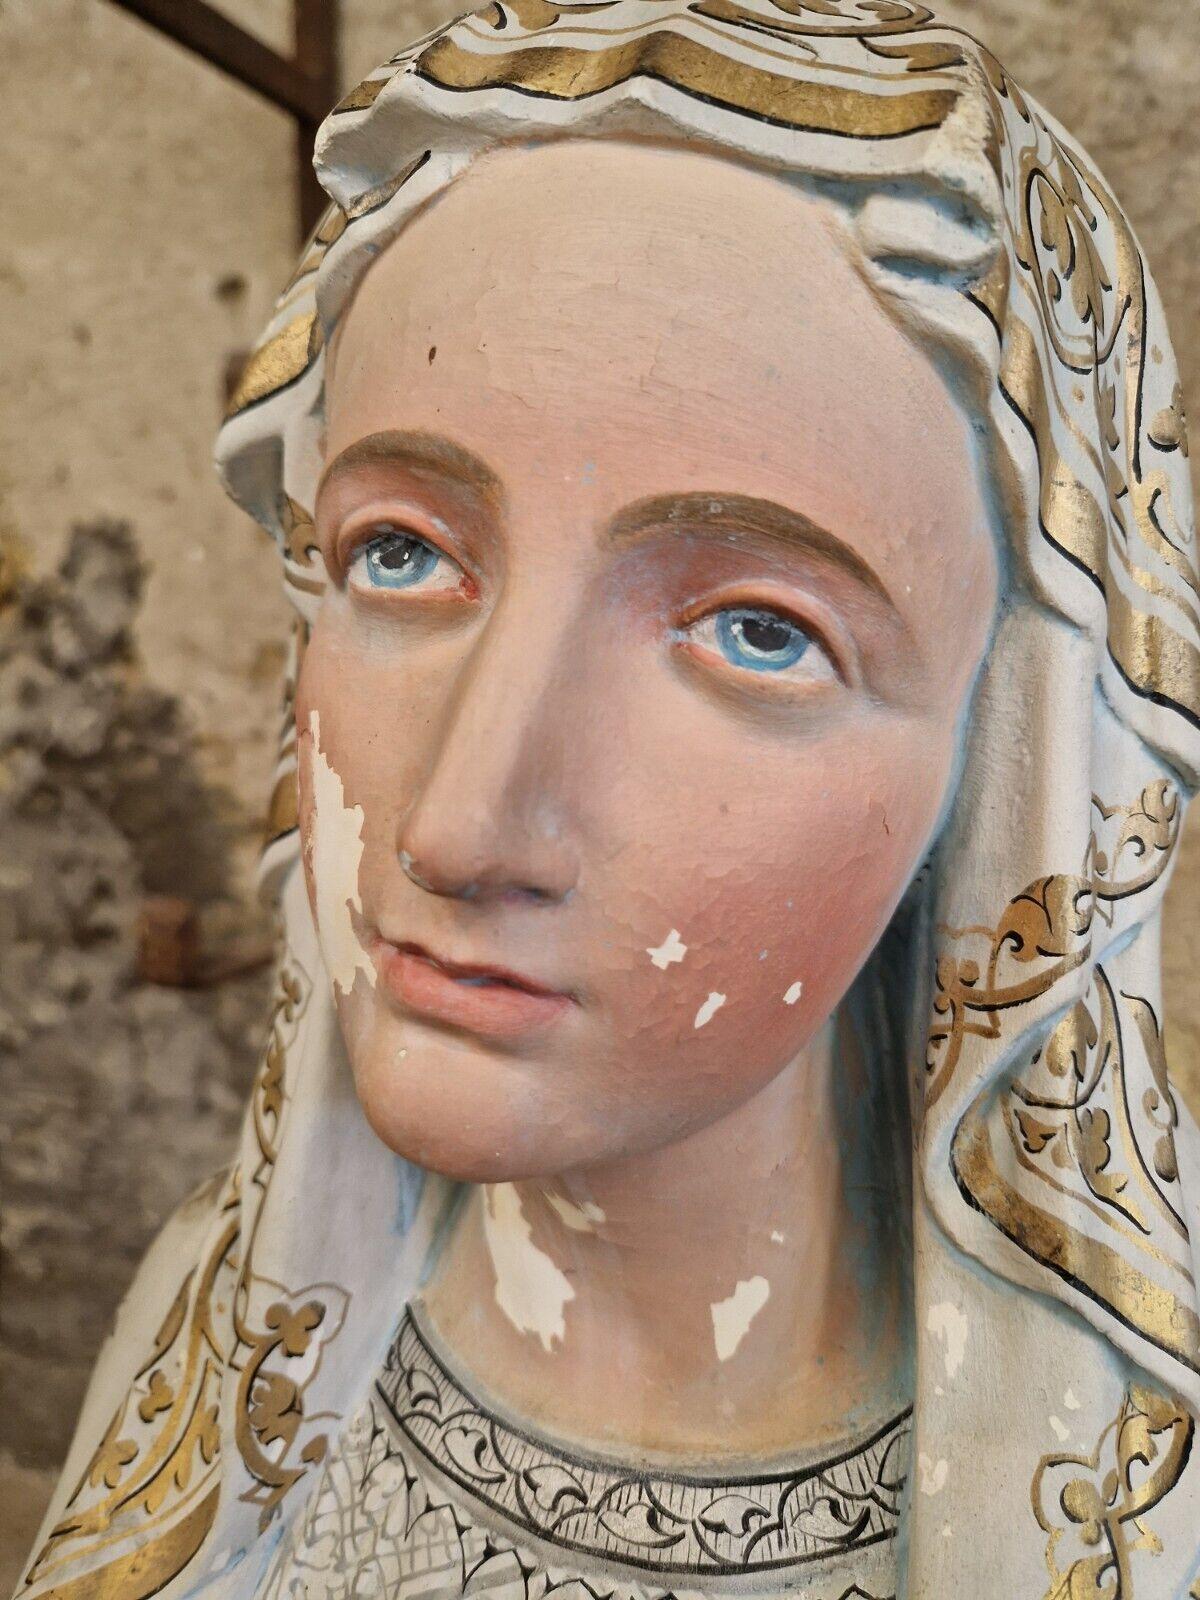 
Cette sculpture exquise est un véritable chef-d'œuvre du XIXe siècle, représentant Marie de Lourdes dans toute sa gloire. Fabriqué avec précision et soin, il est indispensable à tout collectionneur ou amateur d'art. La sculpture est une véritable